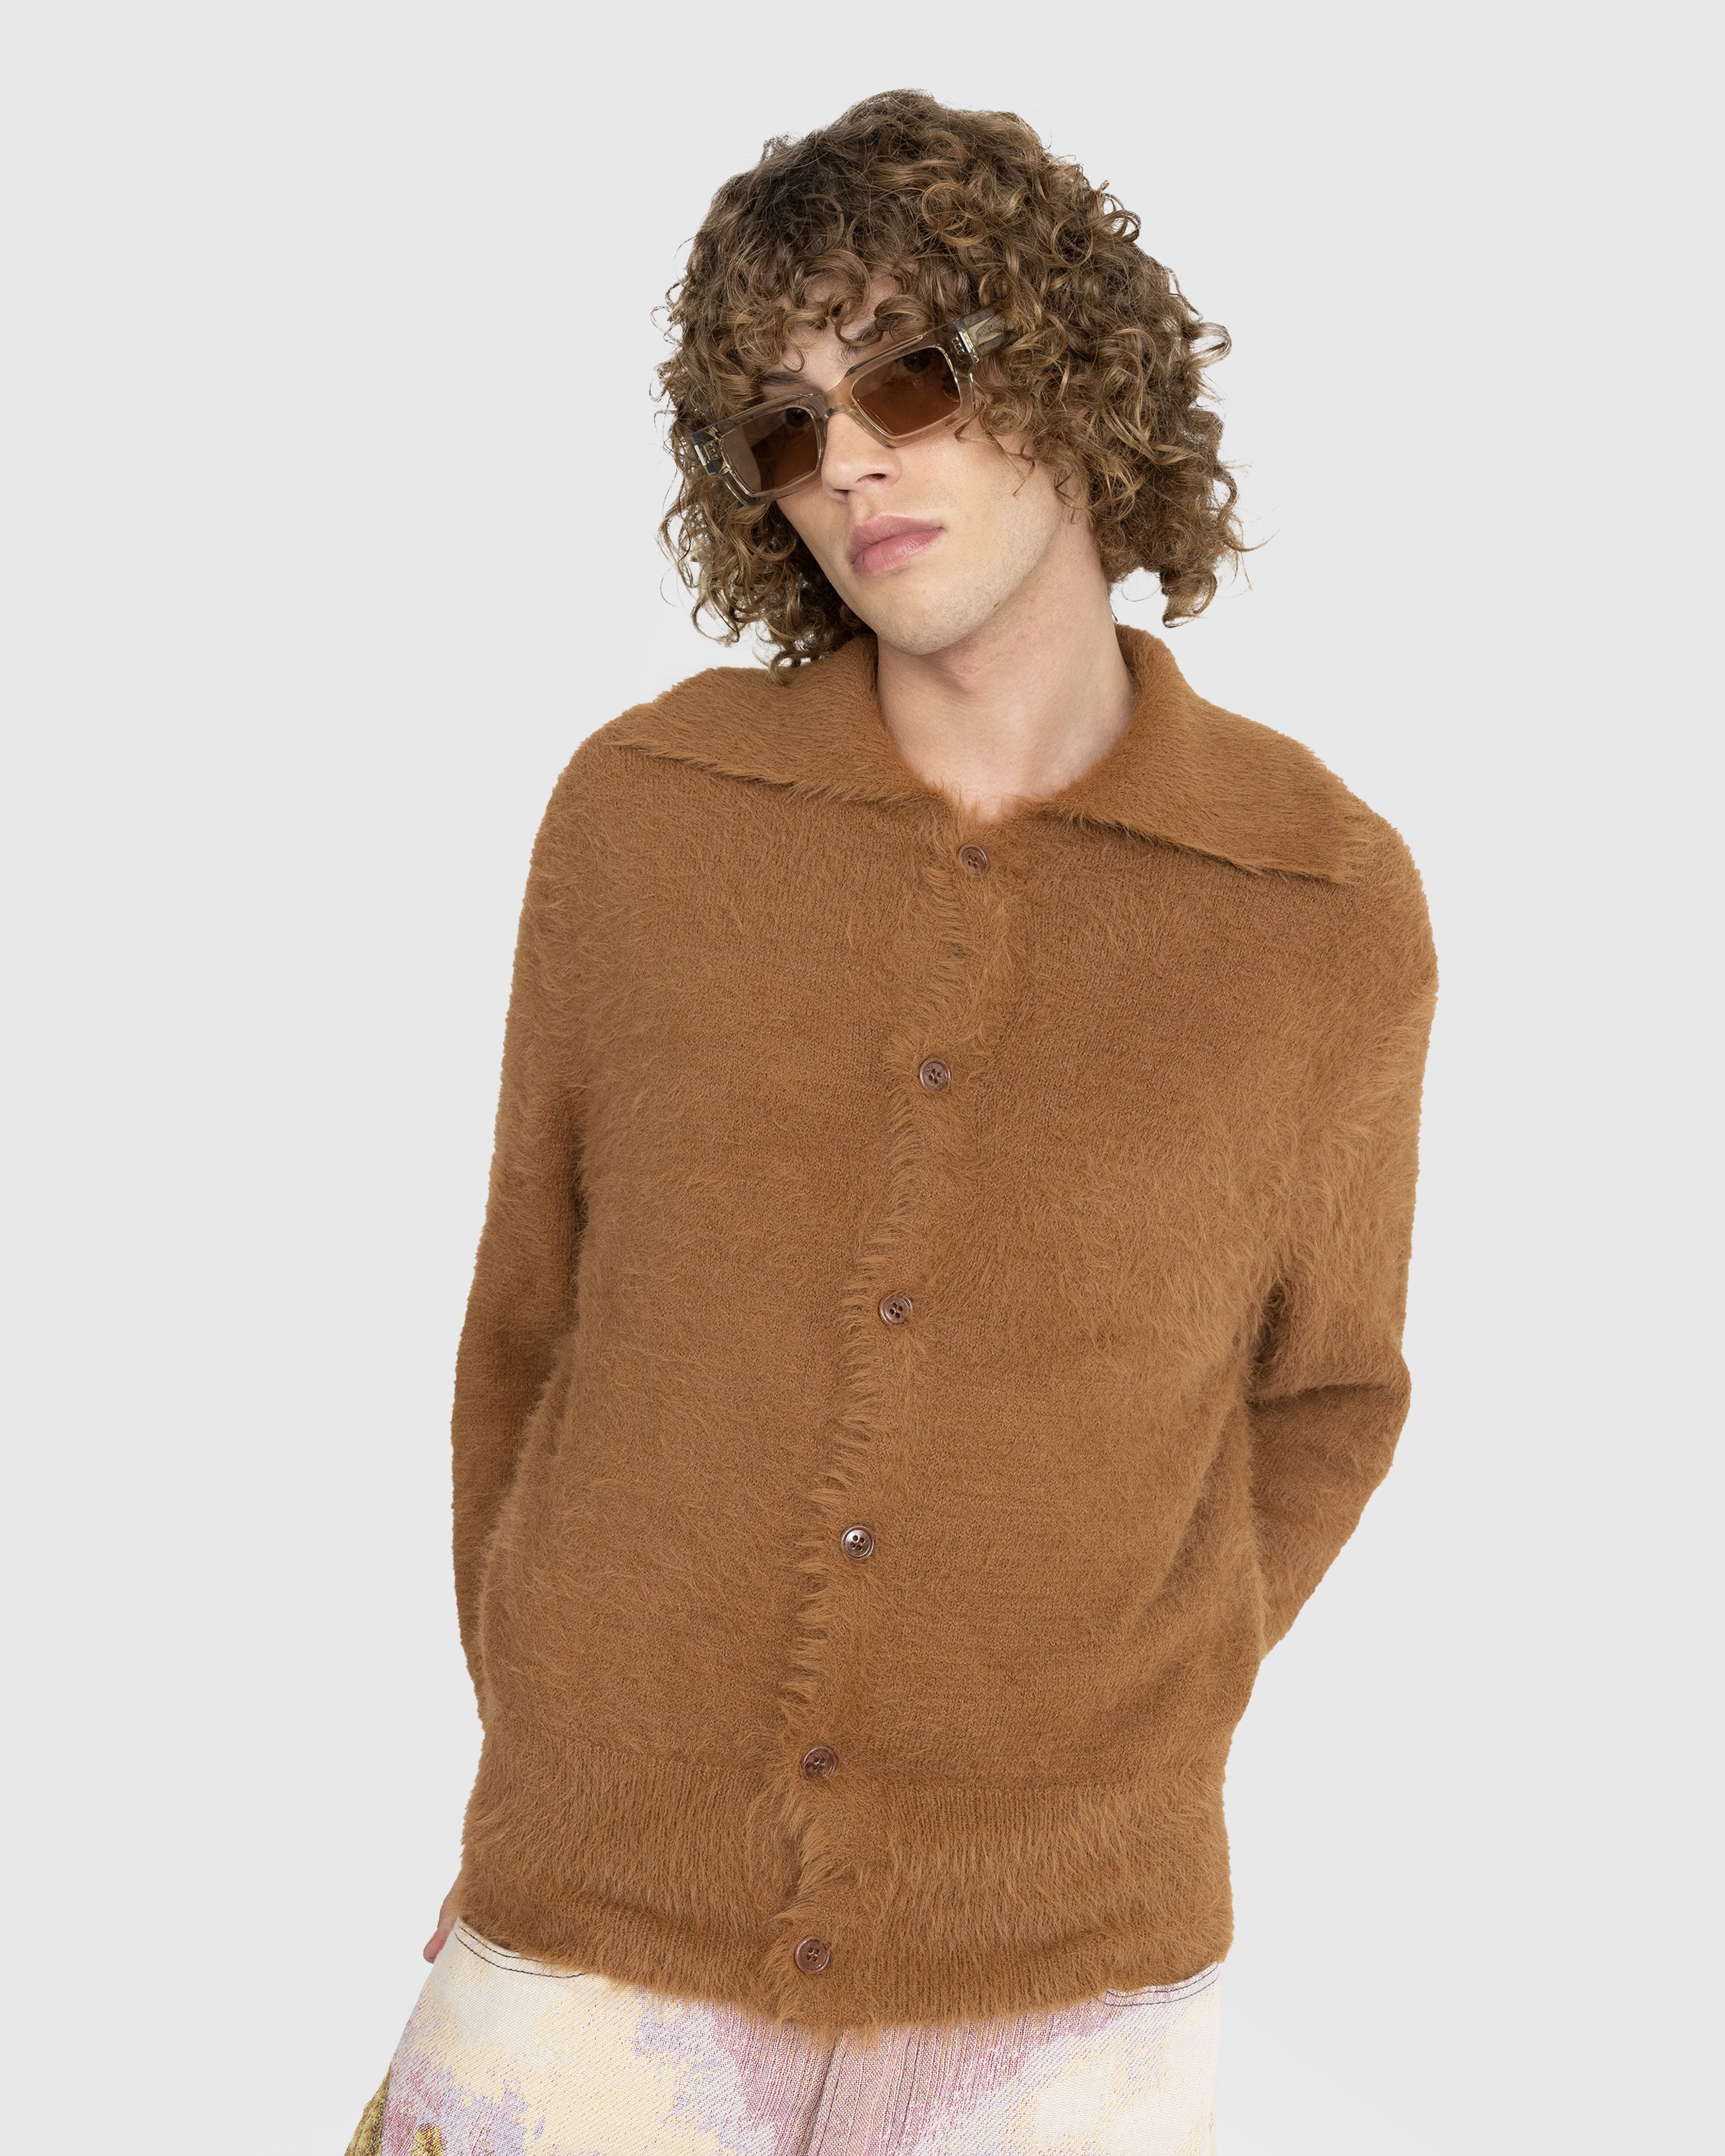 Dries van Noten - Merdan Knit Dark Camel - Clothing - Brown - Image 2